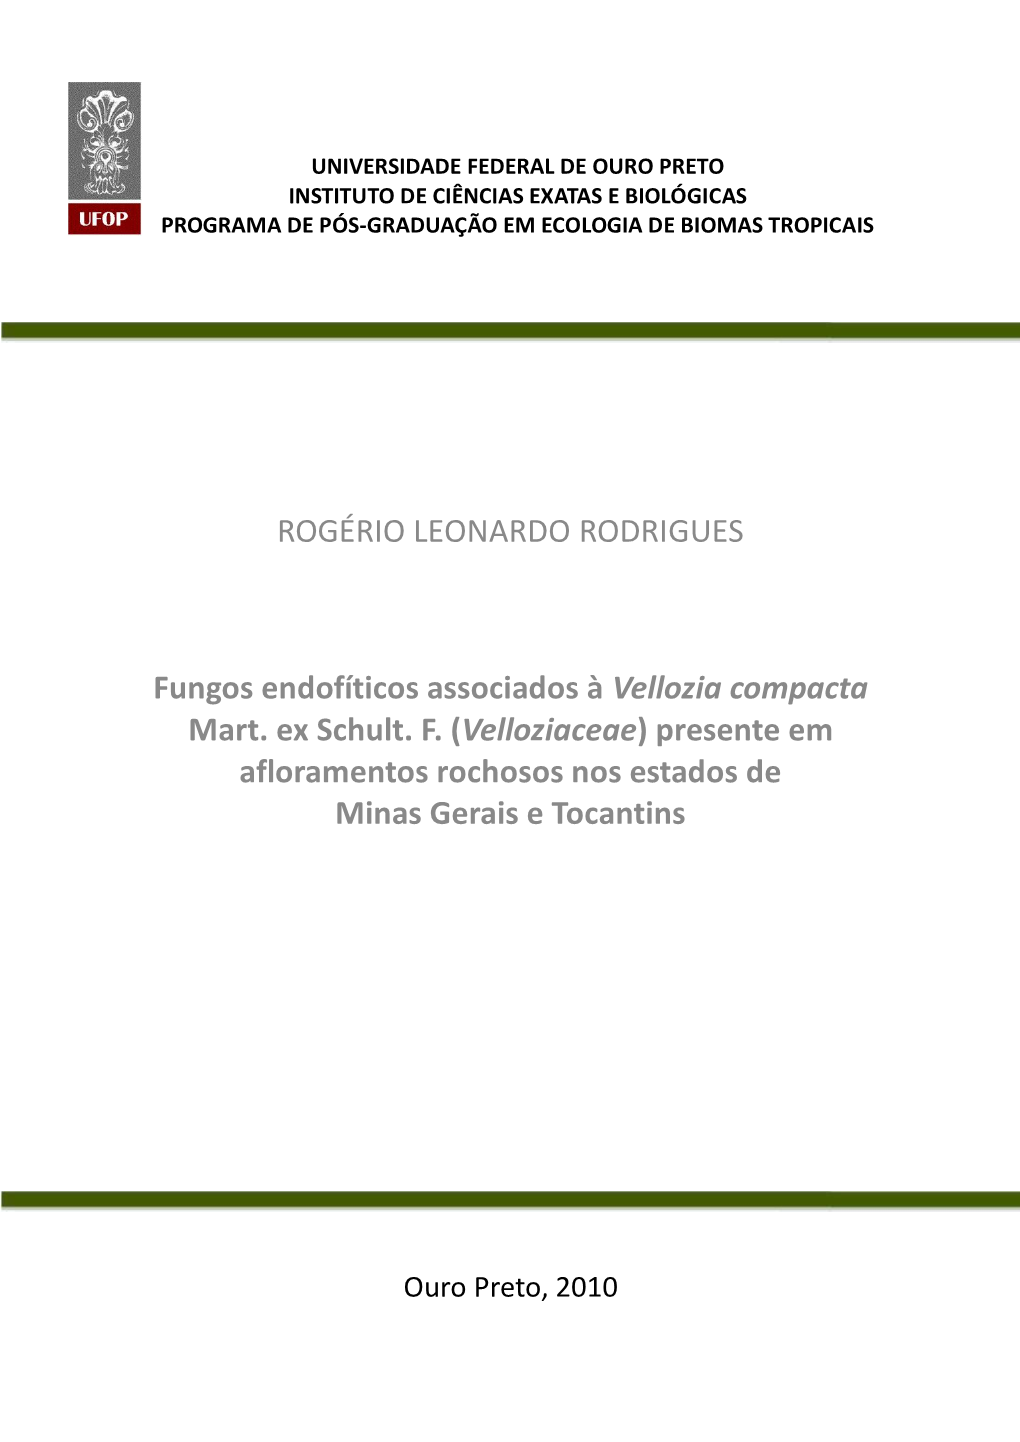 ROGÉRIO LEONARDO RODRIGUES Fungos Endofíticos Associados À